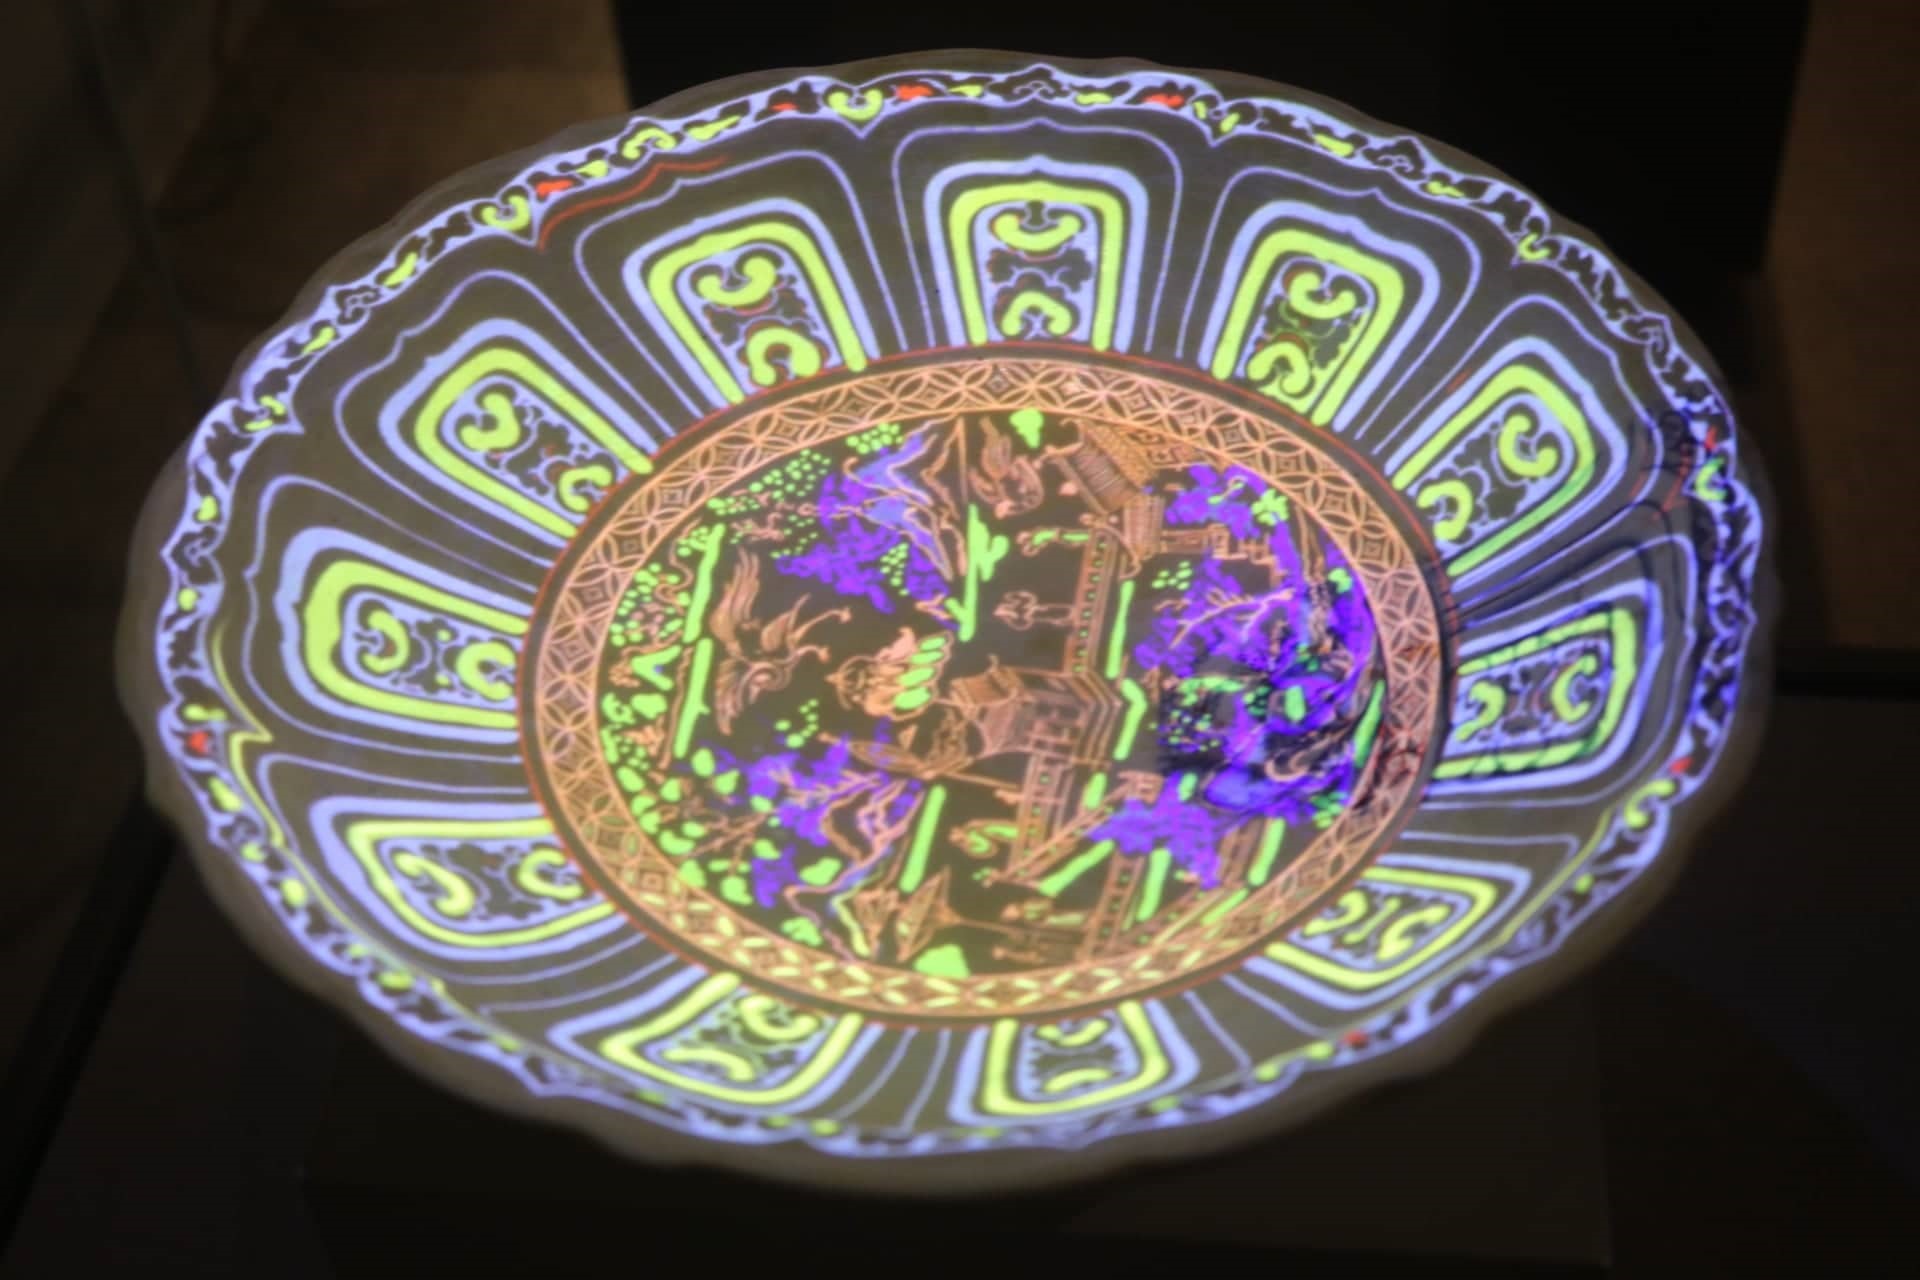 Đĩa gốm vẽ nhiều màu thời Lê sơ được tái hiện lại nhờ áp dụng công nghệ trình chiếu 3D mapping mô phỏng.